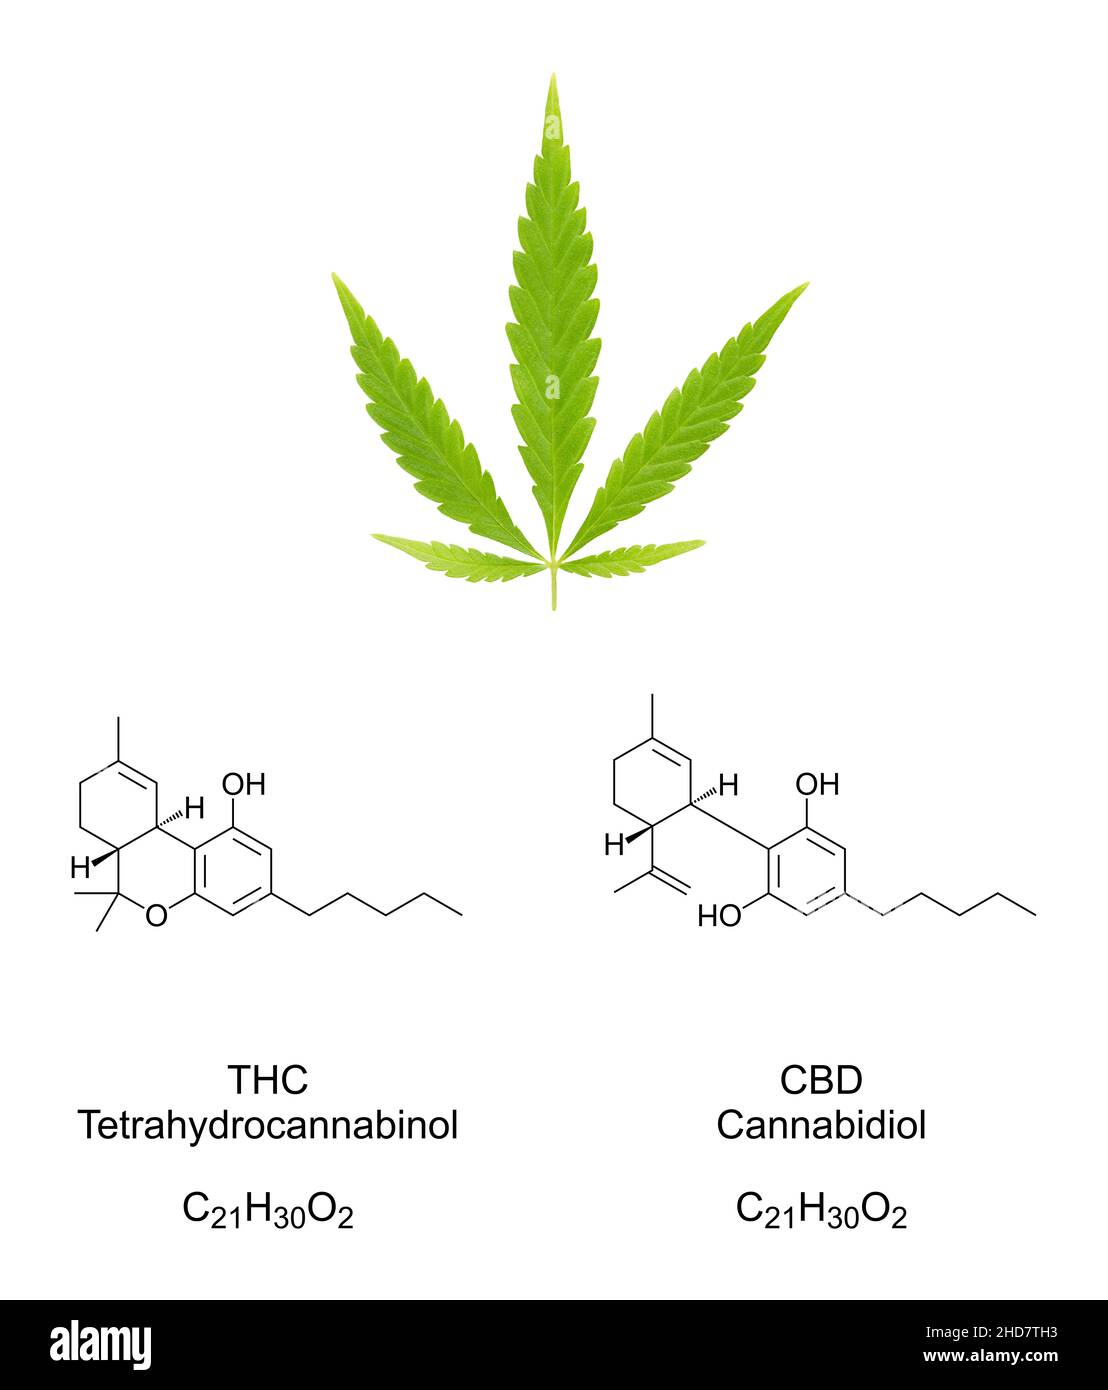 Feuille de fan de cannabis avec des formules chimiques des cannabinoïdes THC et CBD.Feuilles de chanvre et structures chimiques du tétrahydrocannabinol et du cannabidiol. Banque D'Images